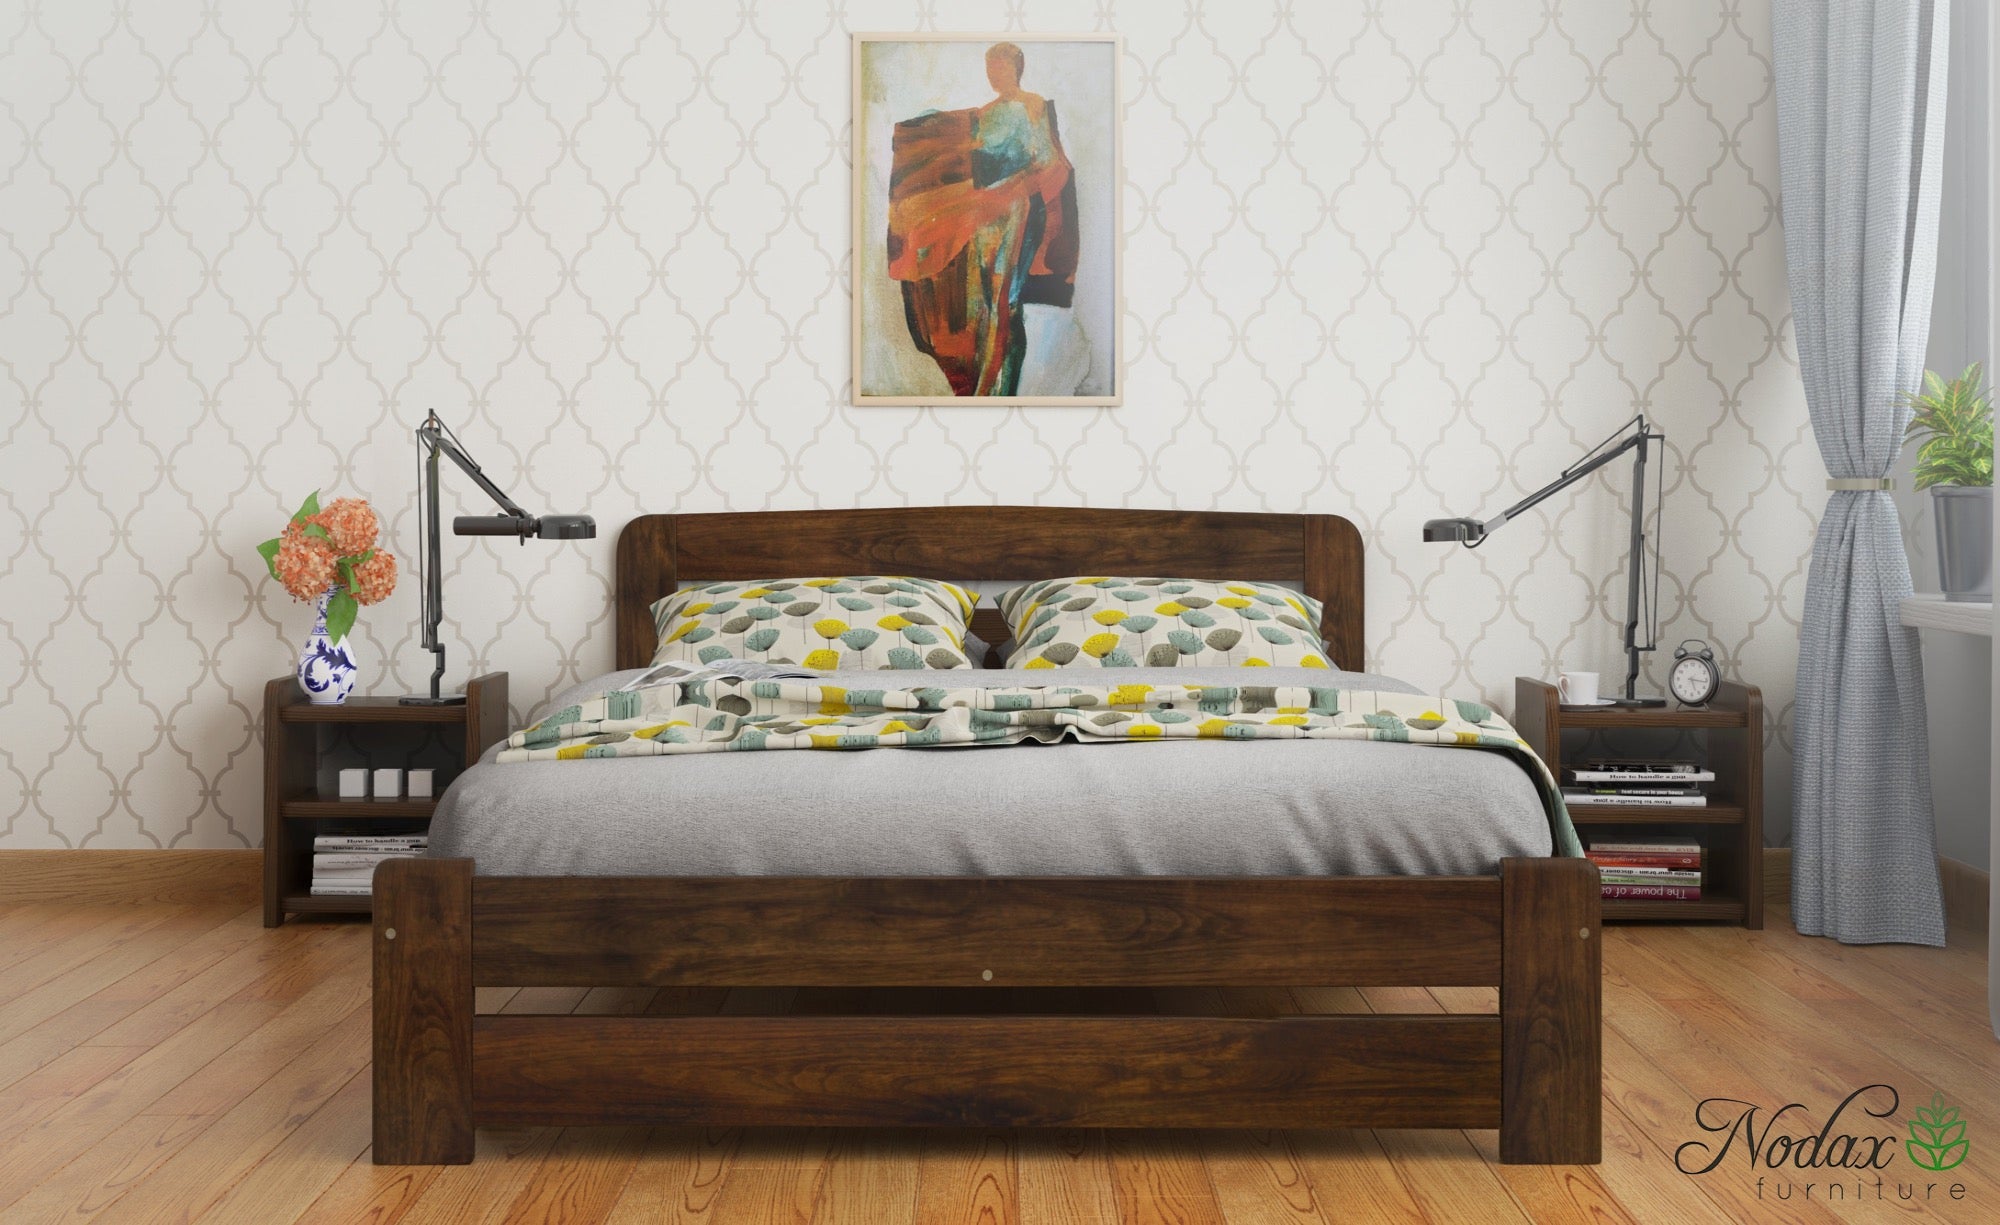 Wooden-bed-frame-F1-beds-online-walnut